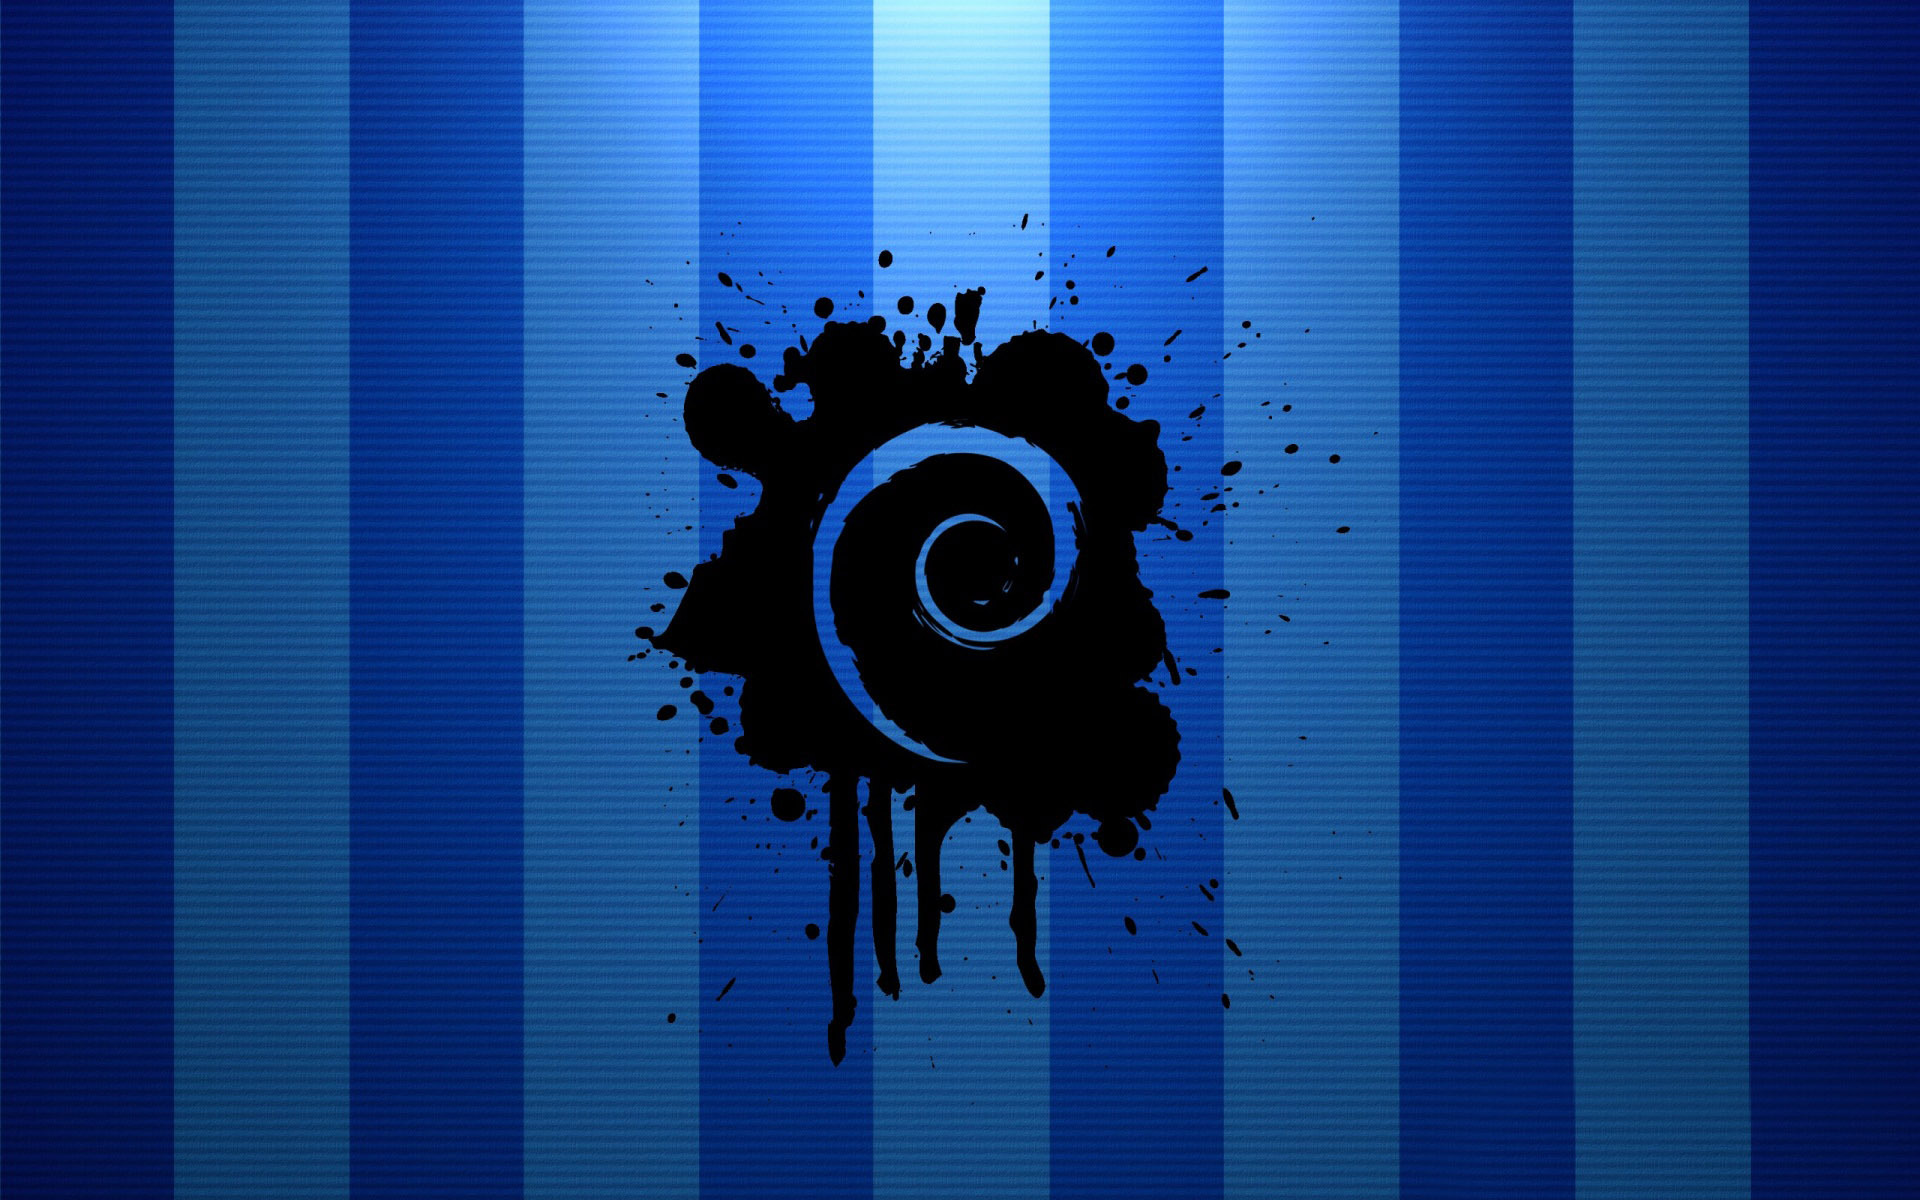 Debian Wallpaper